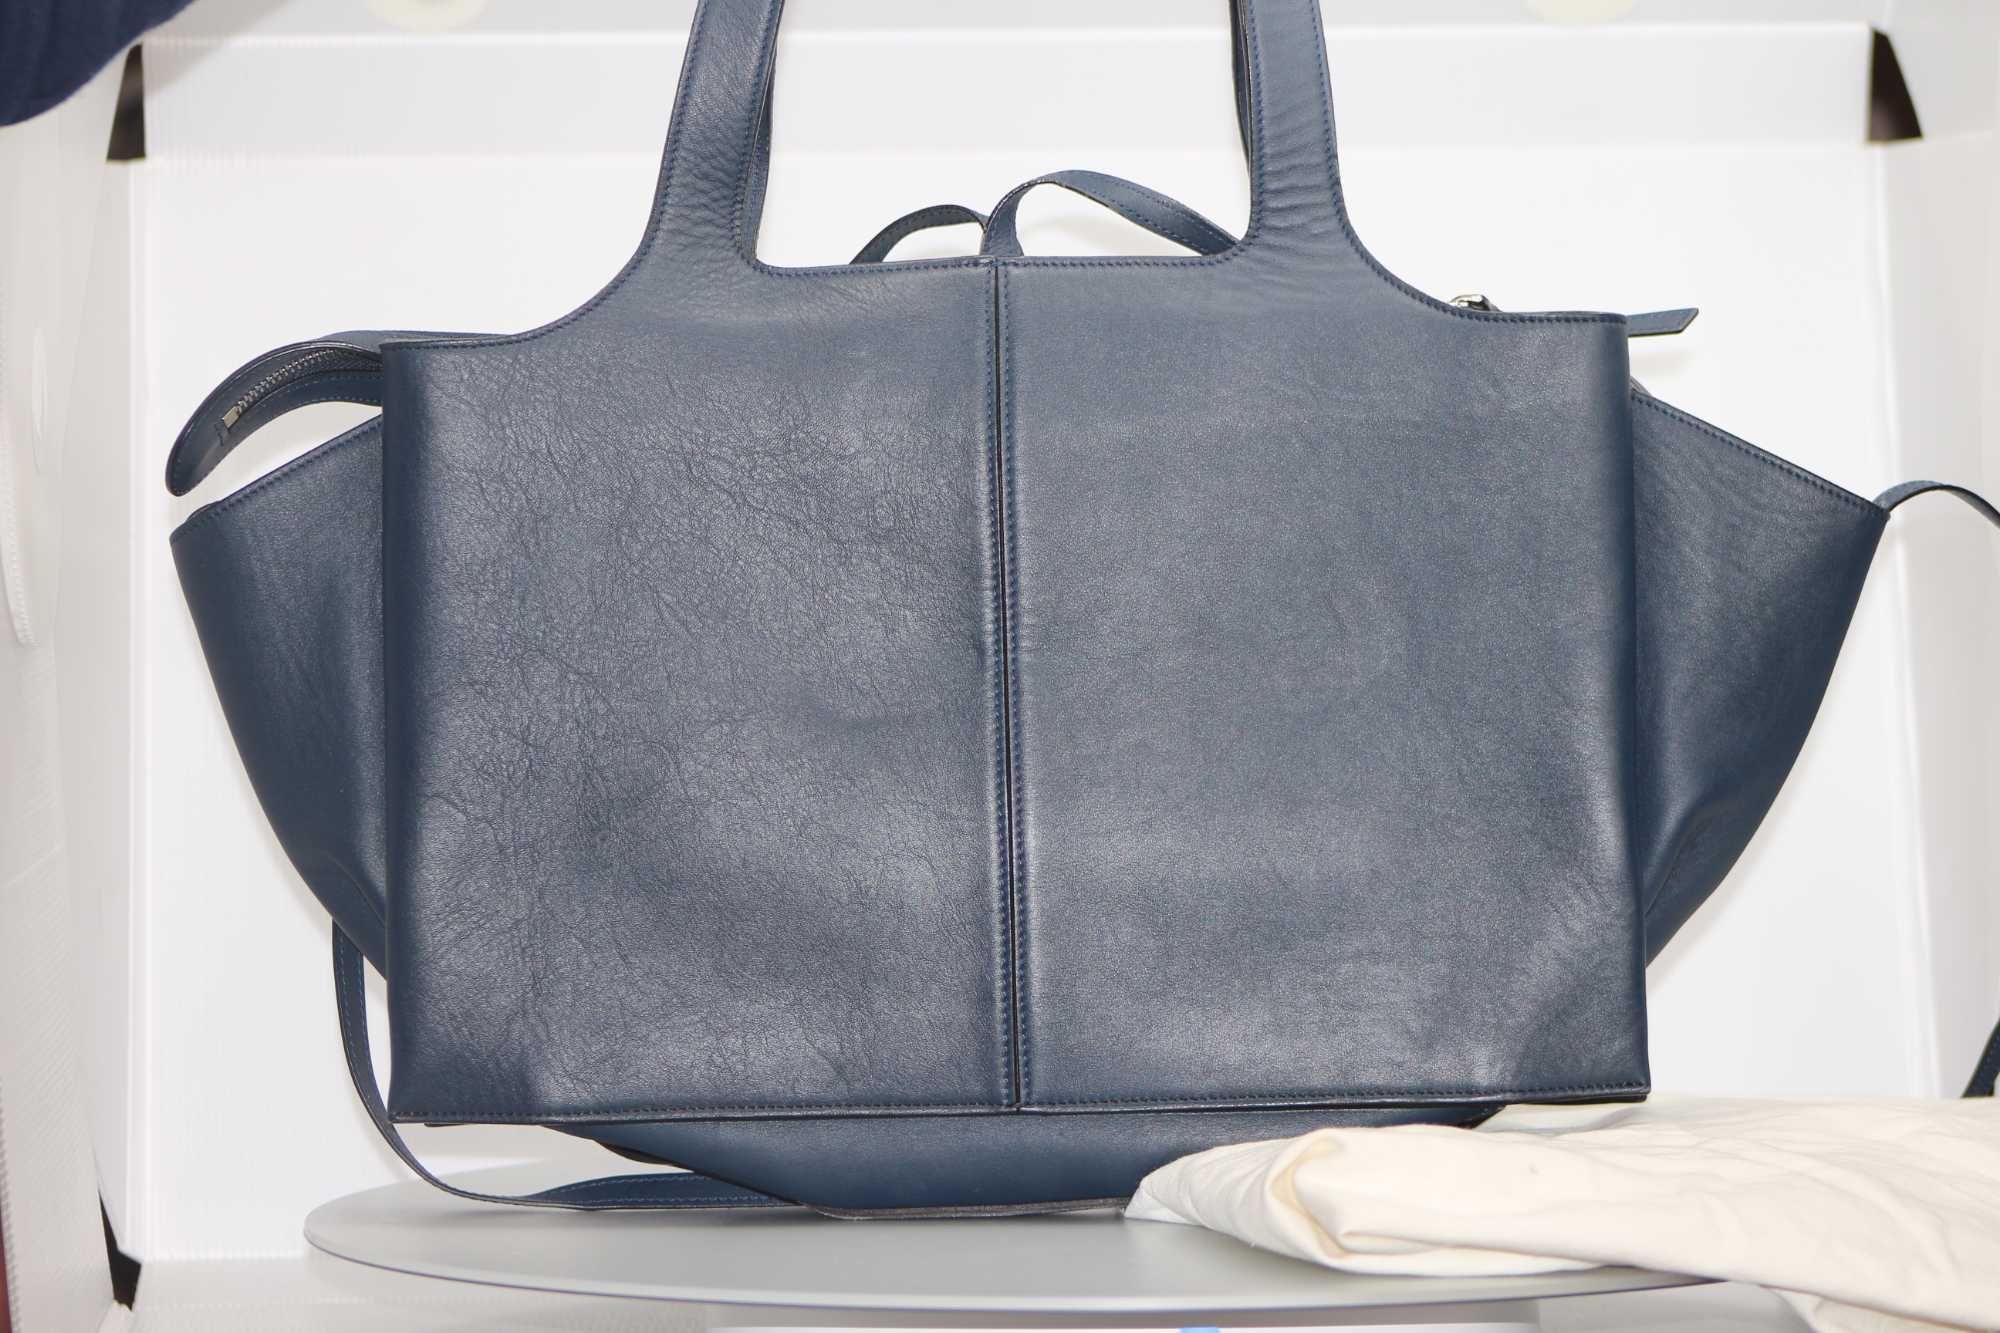 Celine Tri-Fold Shoulder Bag Grained Calfskin medium